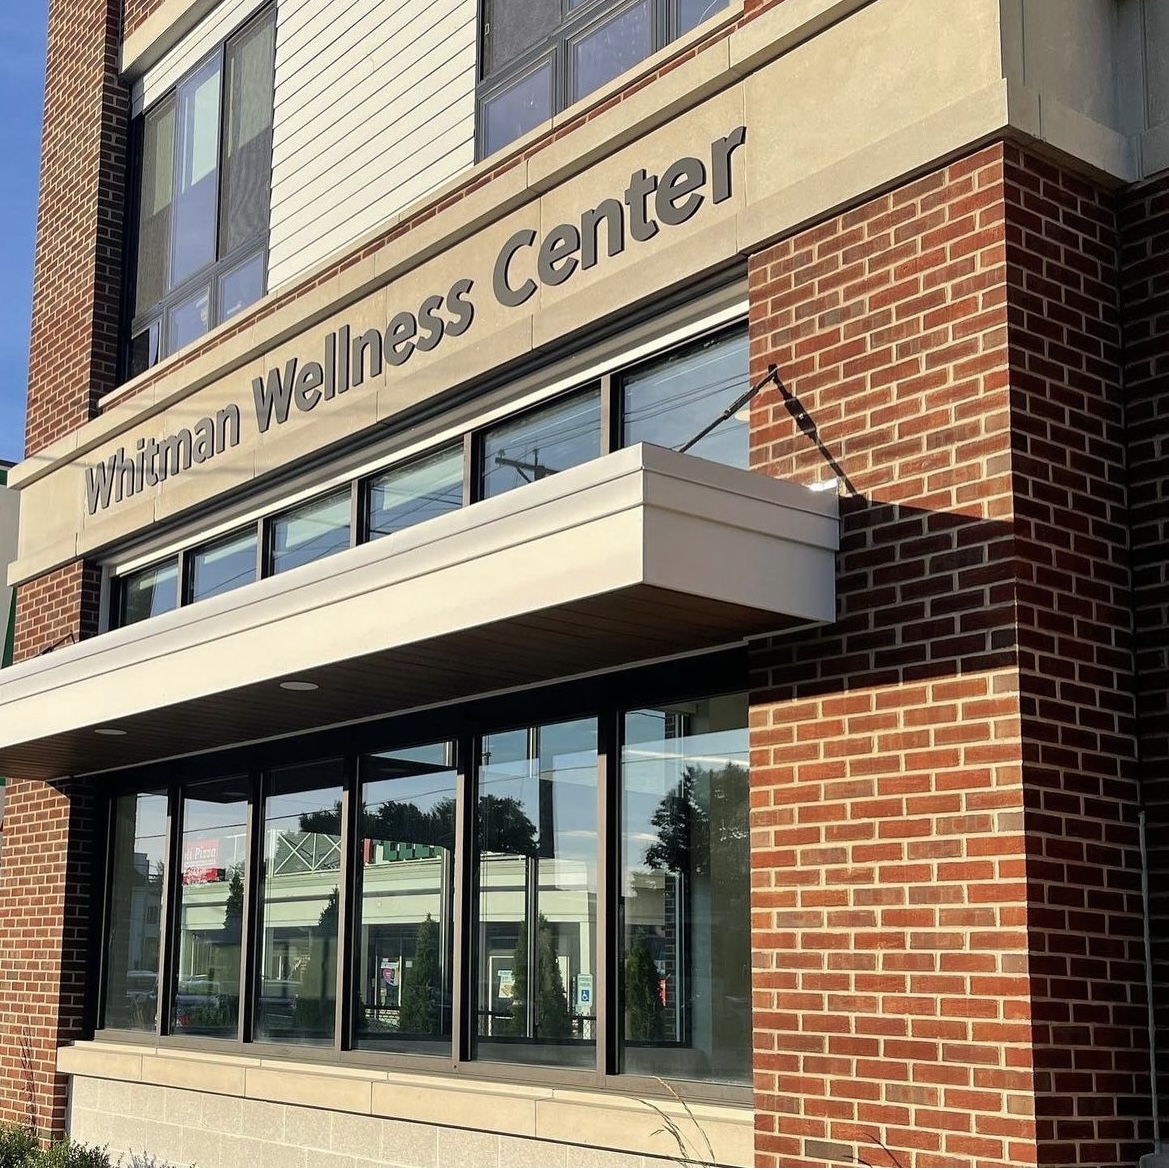 Whitman Wellness Center 629 Washington St, Whitman Massachusetts 02382